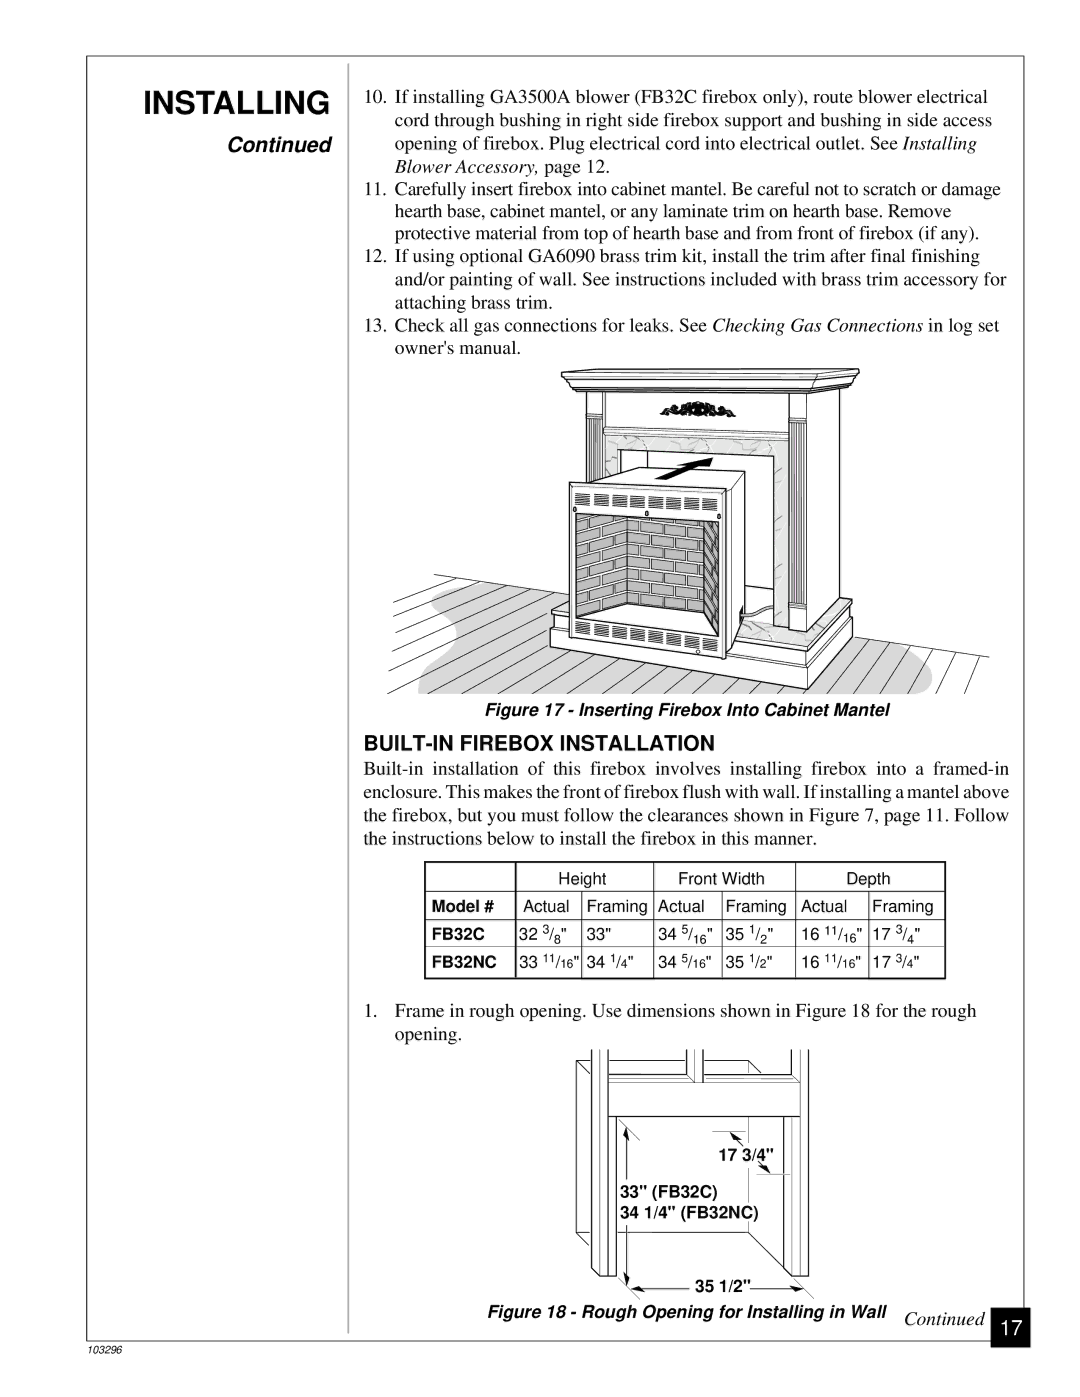 Desa FB32C installation manual Installing, BUILT-IN Firebox Installation 